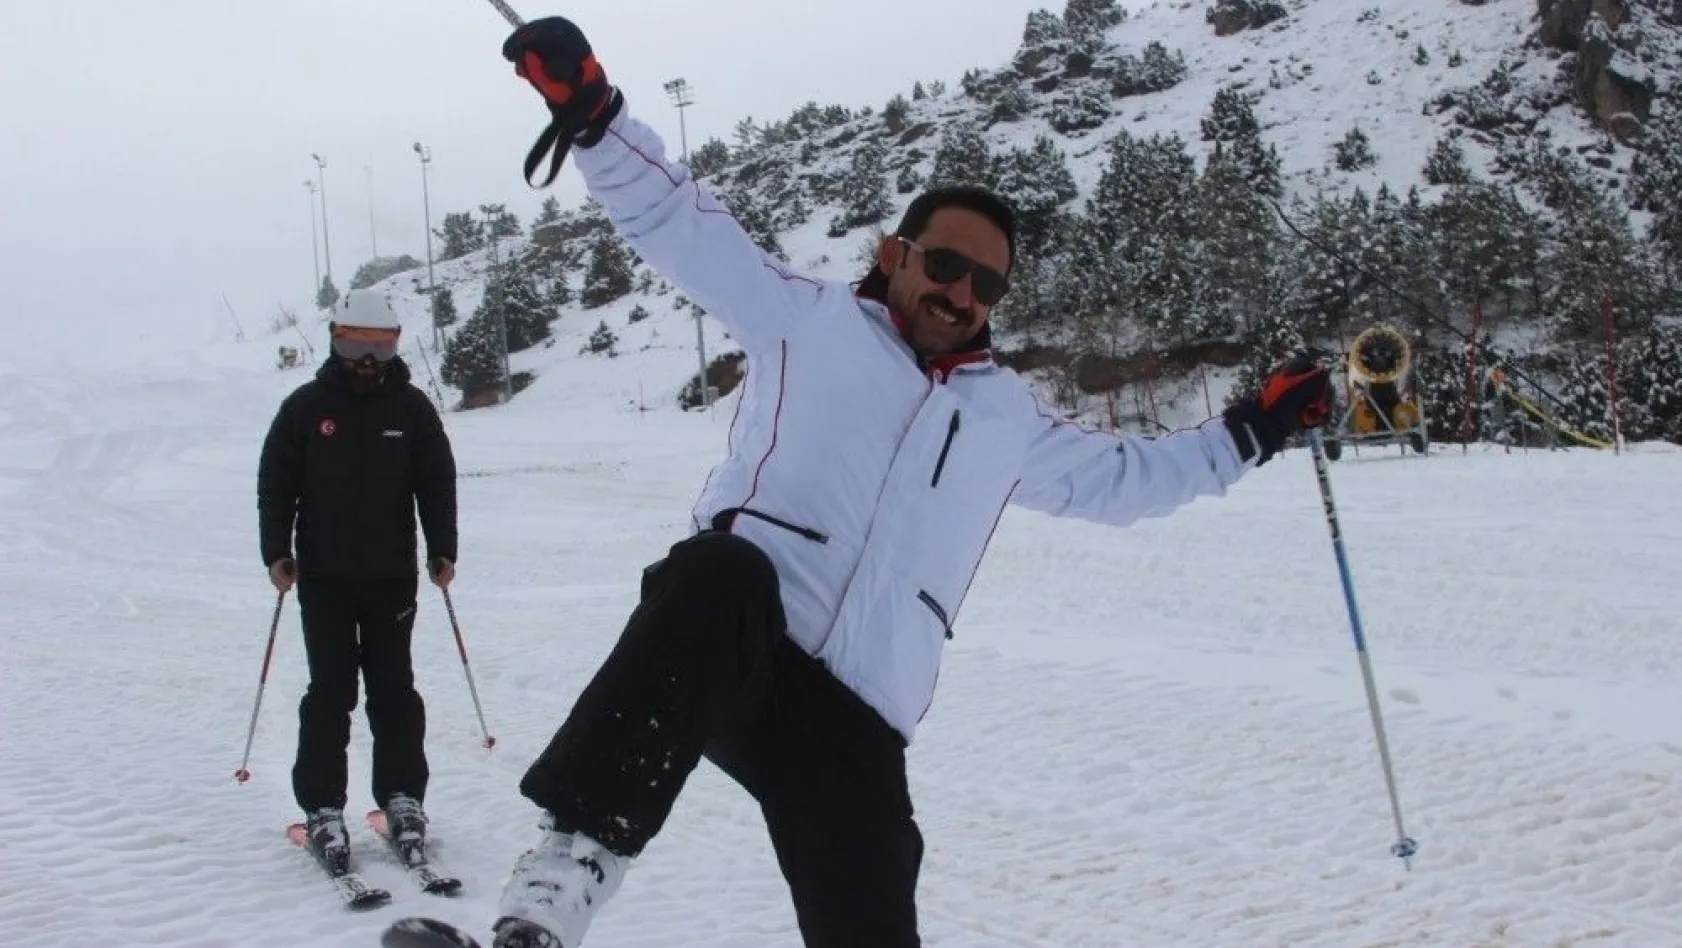 Erzincan Ergan Dağı Kayak Merkezinde kayak sezonu açıldı
